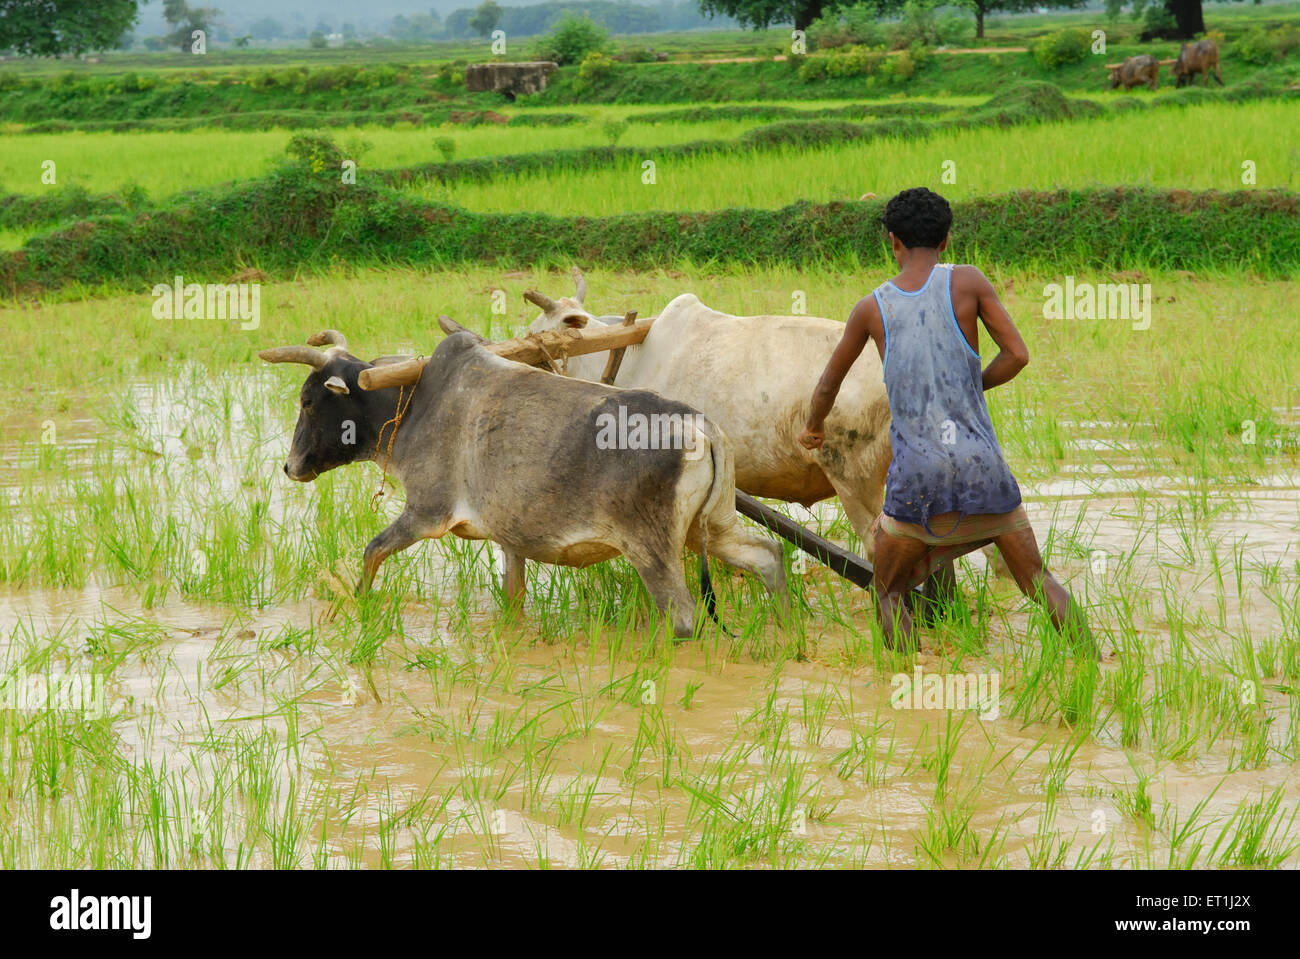 Tribus Ho man avec taureaux en rizière ; Chakradharpur Jharkhand ; Inde ; PAS DE MR Banque D'Images